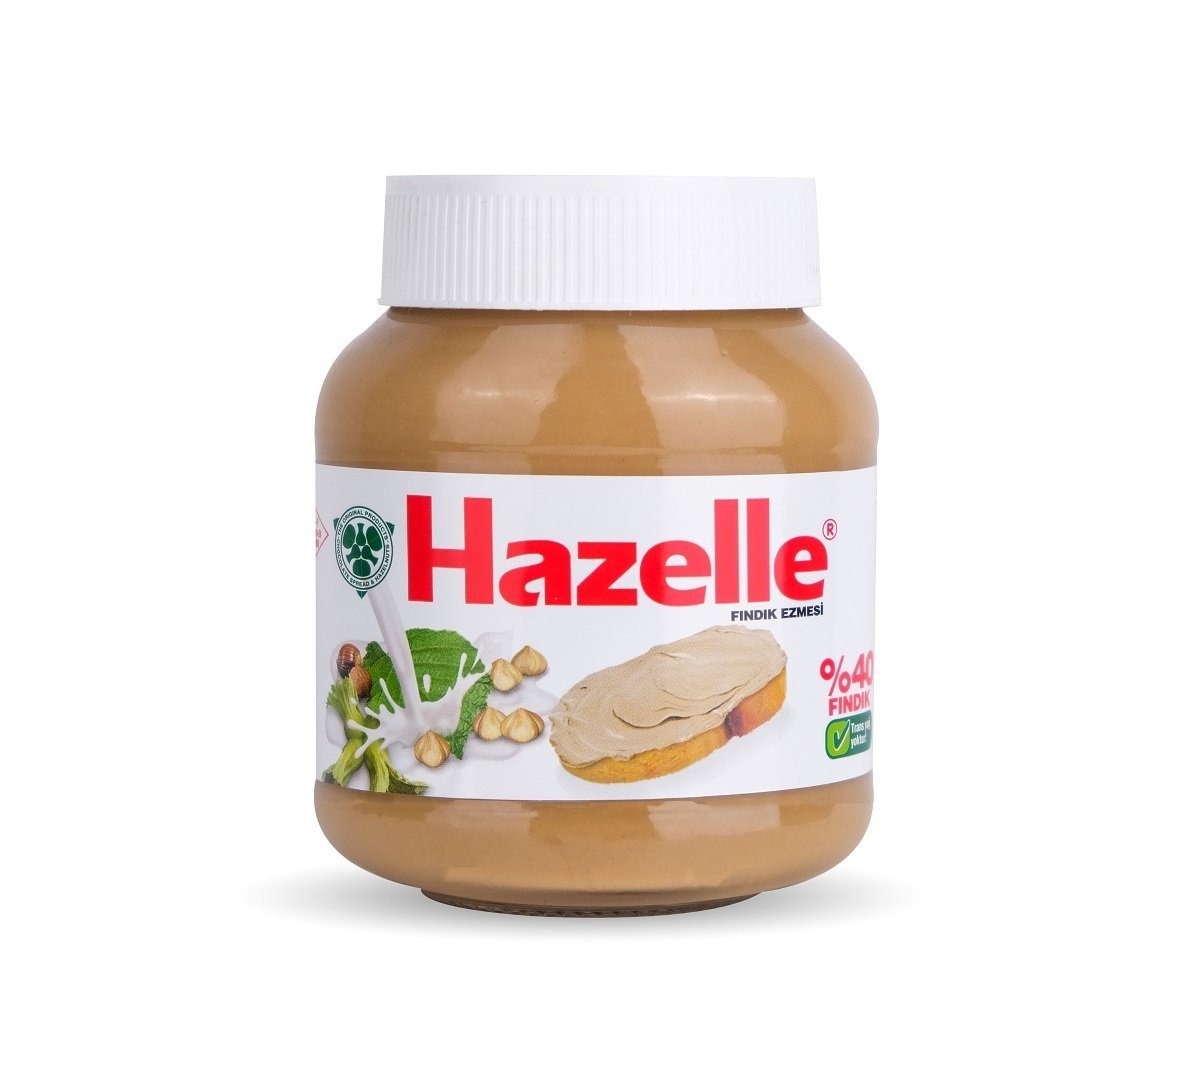 Hazelle Sütlü Fındık Ezmesi 350g (%40 Fındıklı)